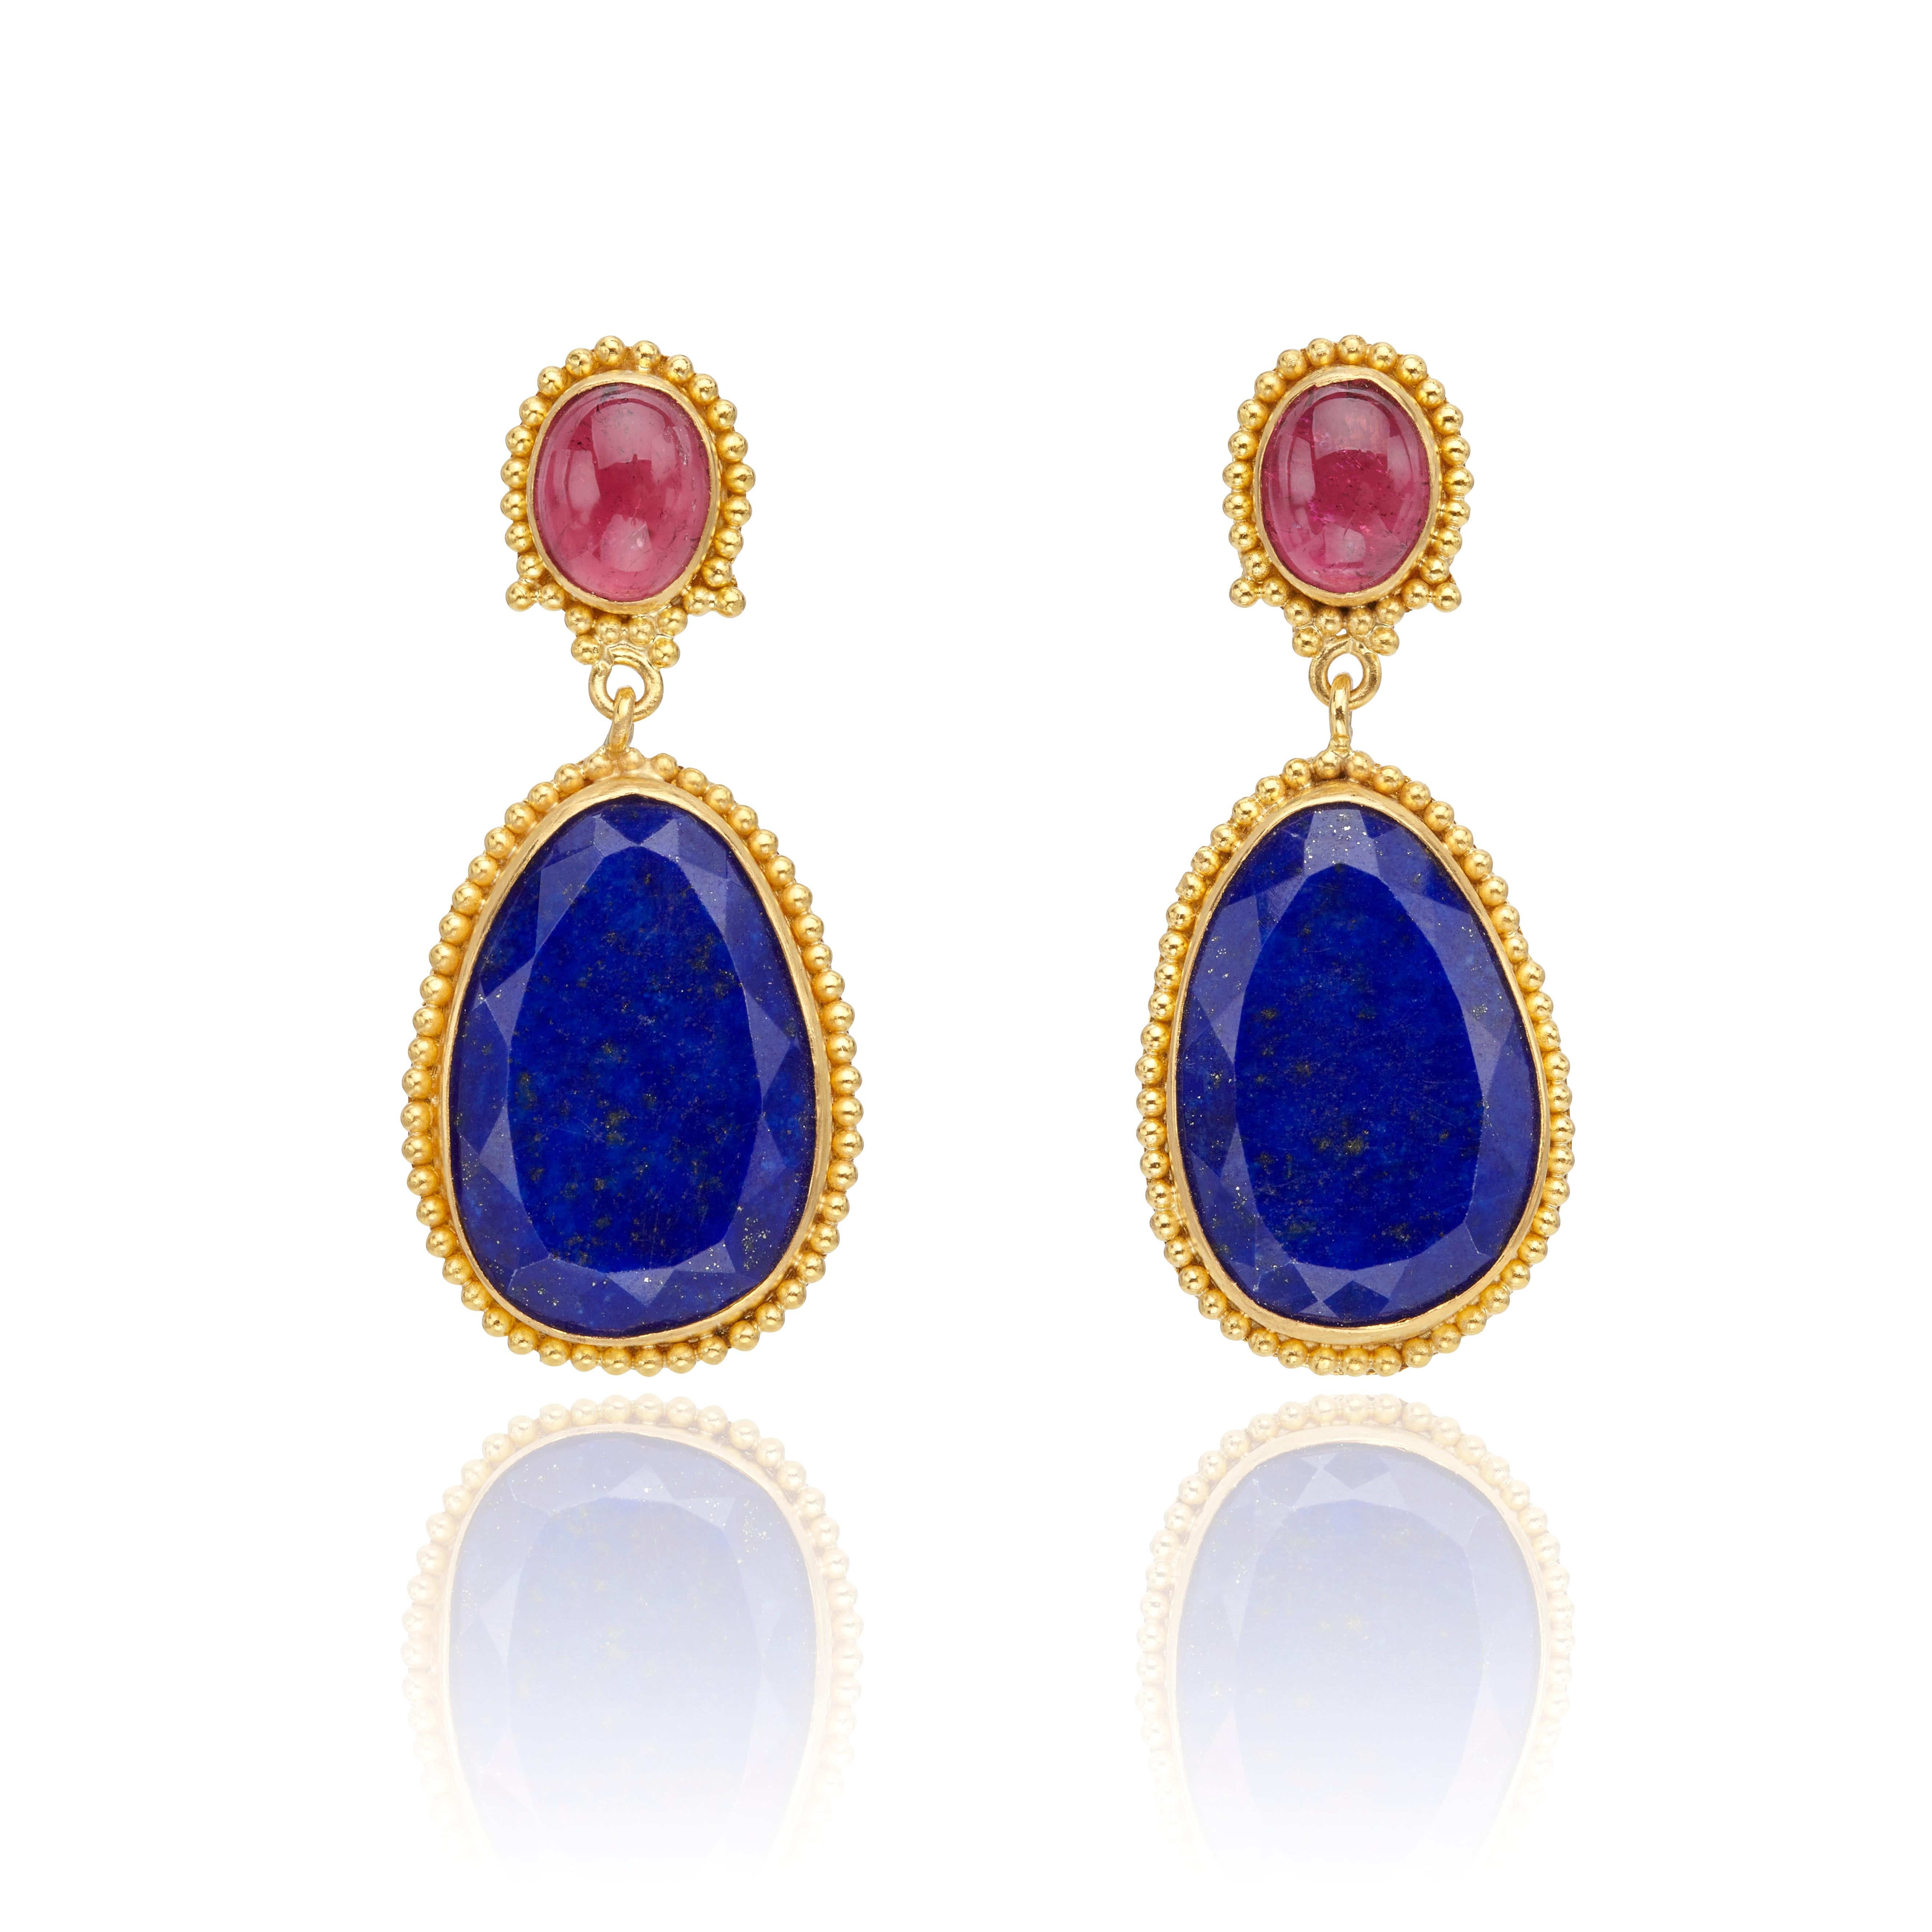 Boucles d'oreilles en perles d'or, en or jaune 22Kt, fabriquées à la main selon des techniques traditionnelles, avec du Lapis Lazuli bleu et de la Tourmaline rouge.
Quand le passé rencontre le présent, le résultat est une paire de boucles d'oreilles